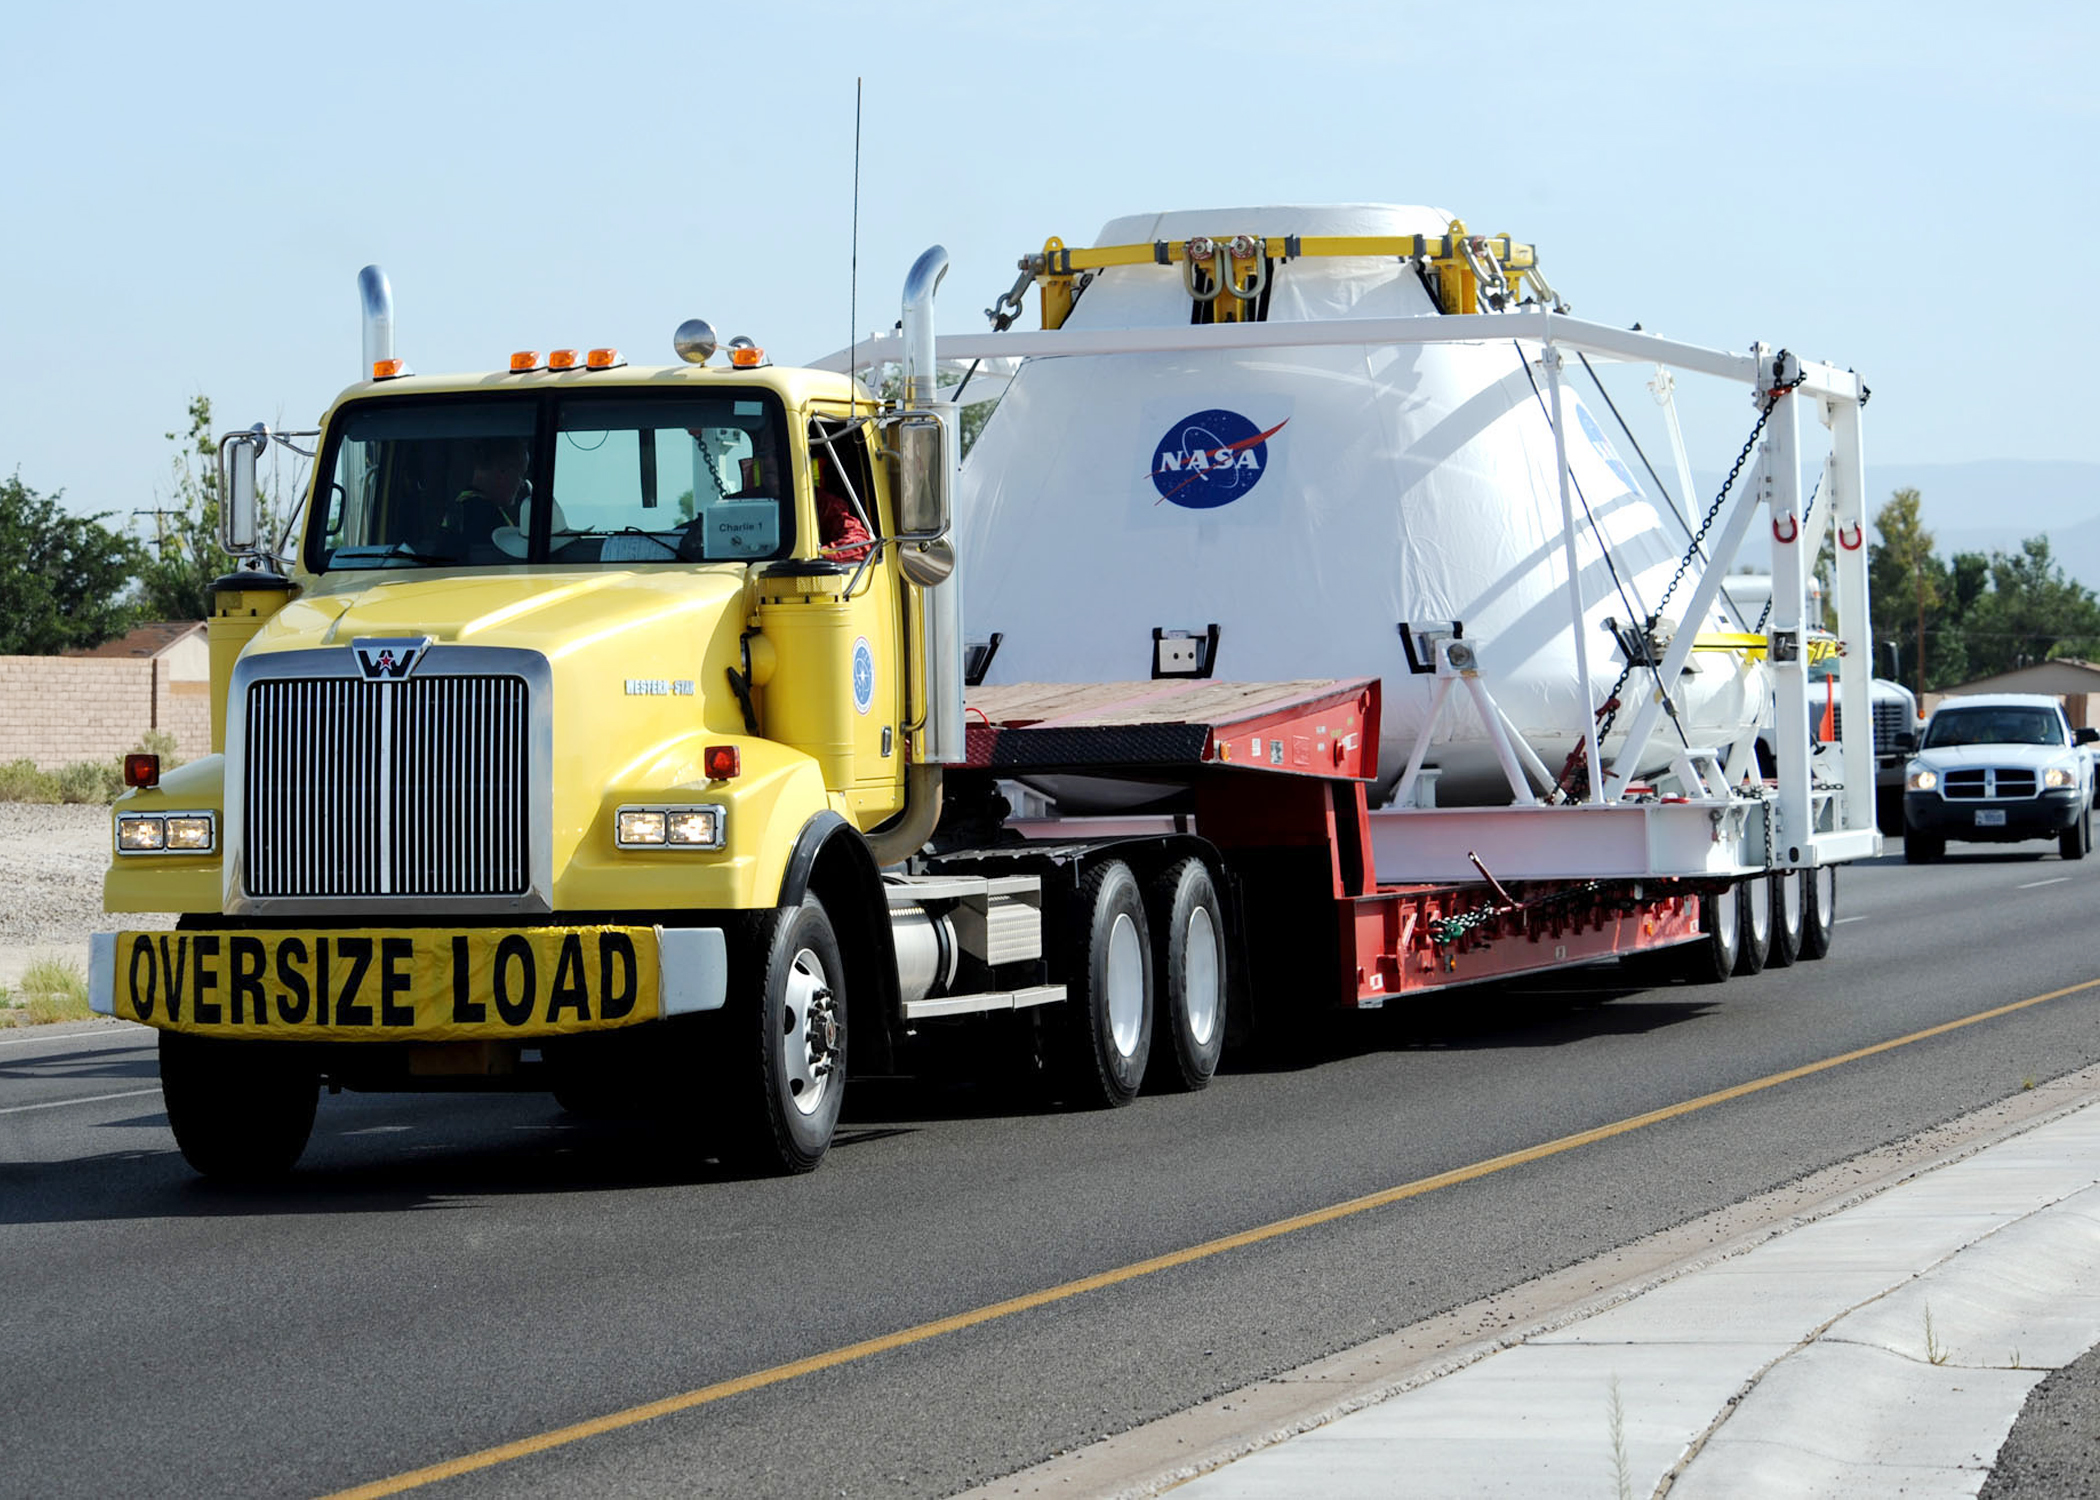 NASA Next-gen spacecraft being transporter